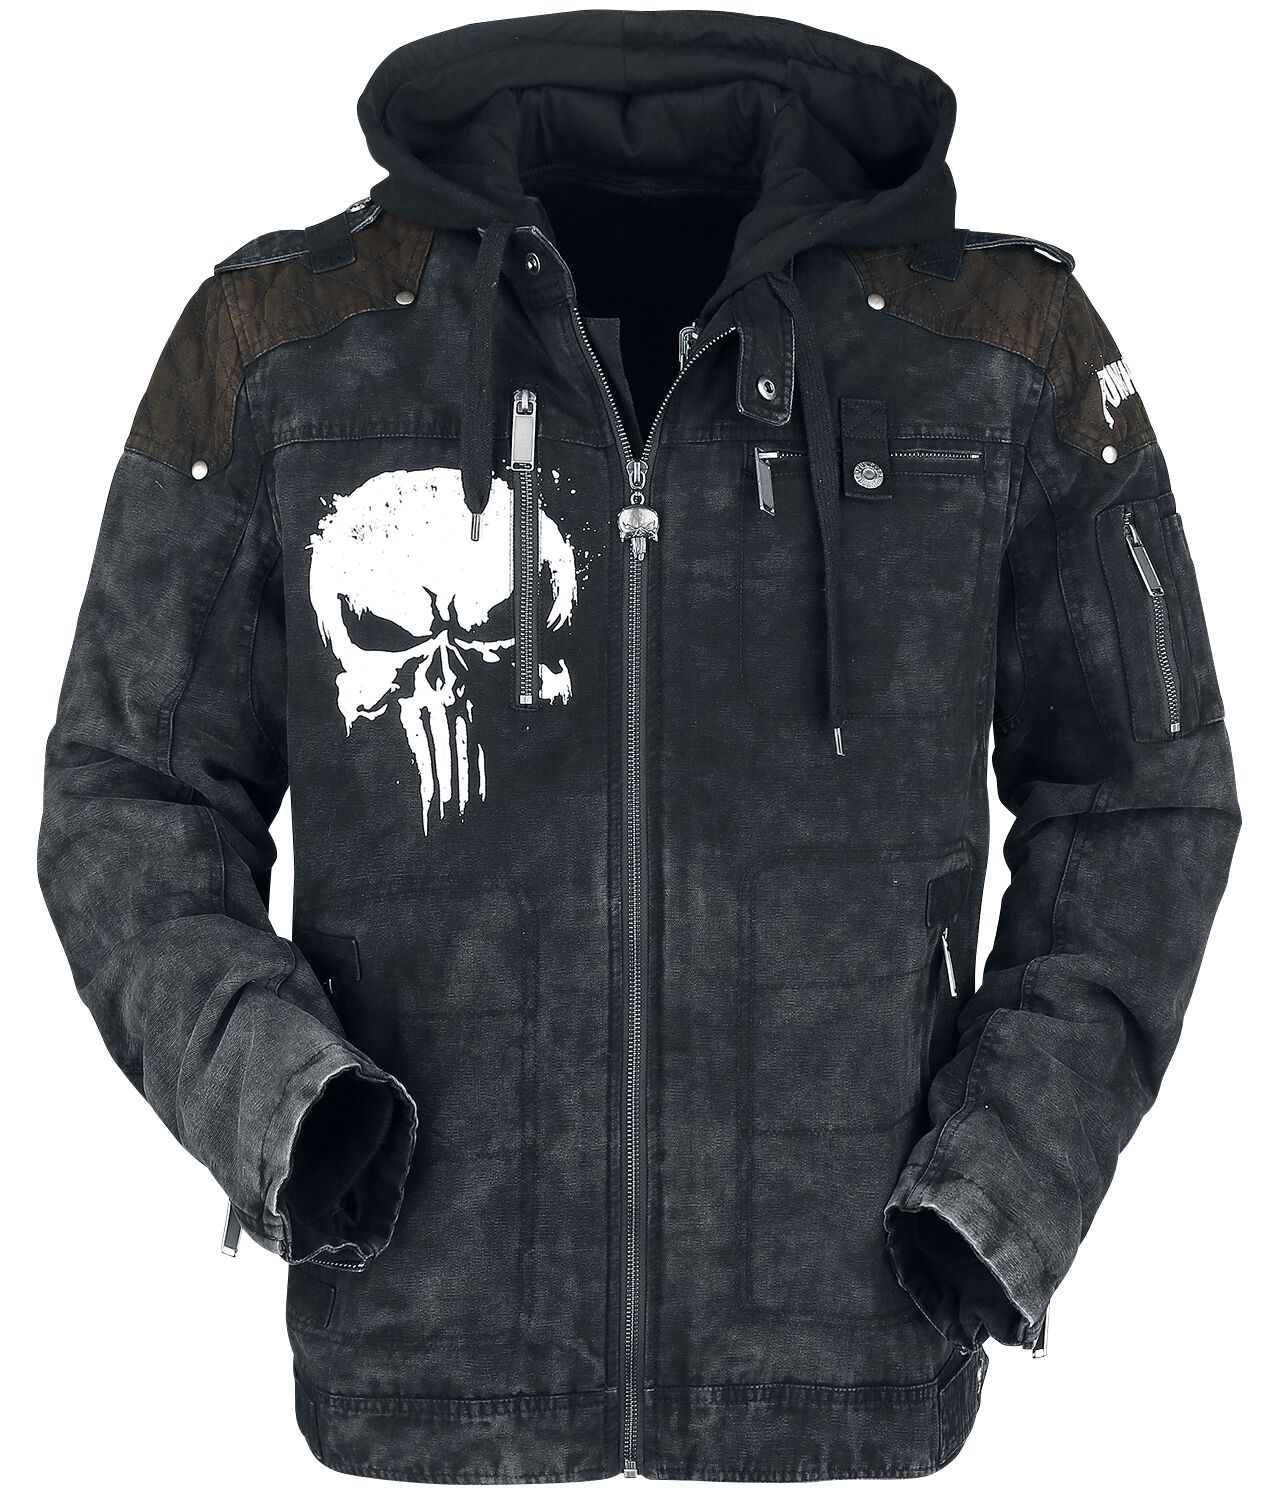 The Punisher - Marvel Winterjacke - Skull - S bis XXL - für Männer - Größe S - schwarz  - EMP exklusives Merchandise!